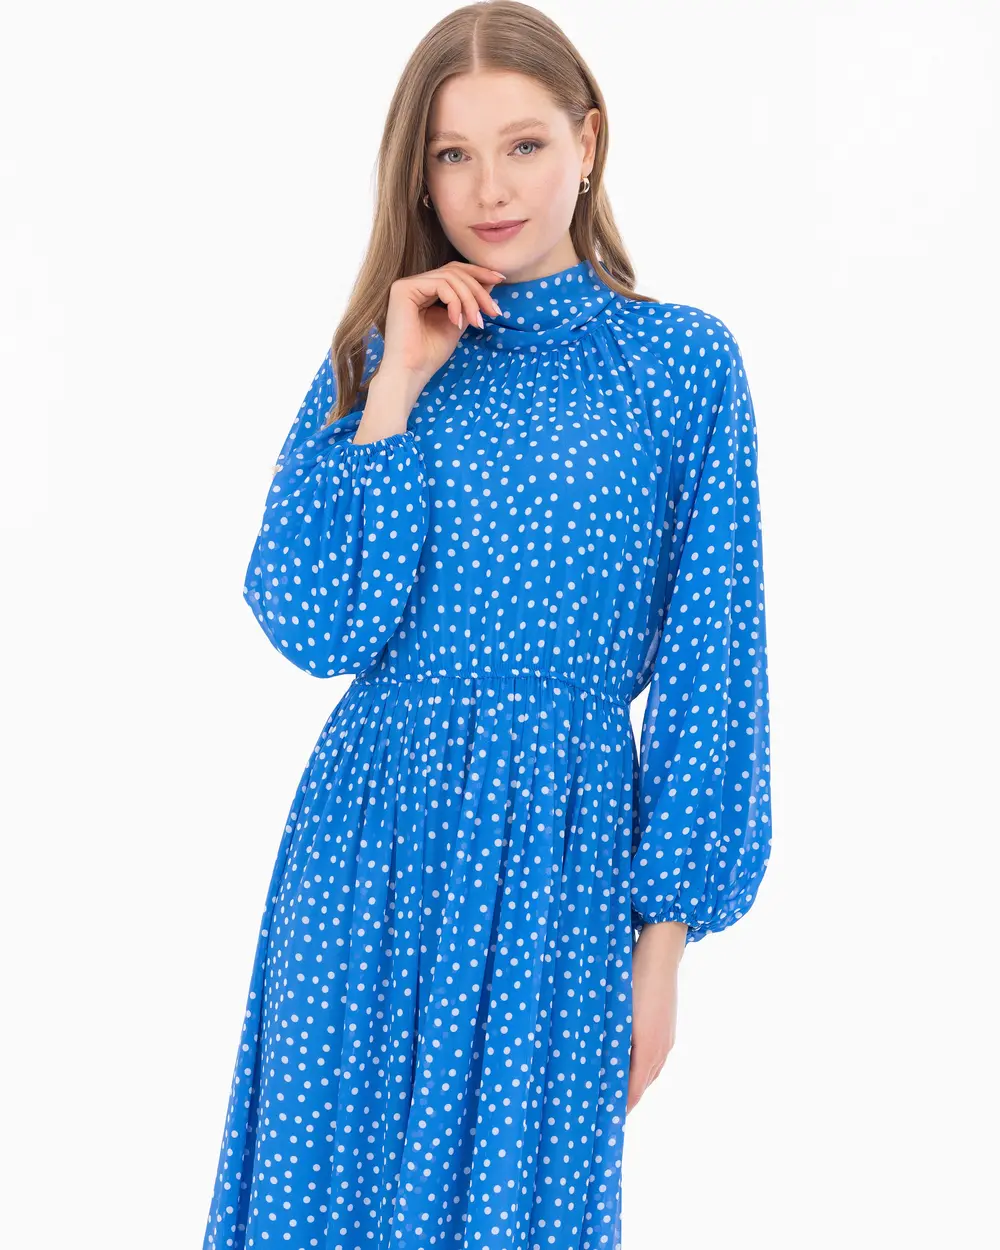 Dot Pattern Lined Chiffon Dress